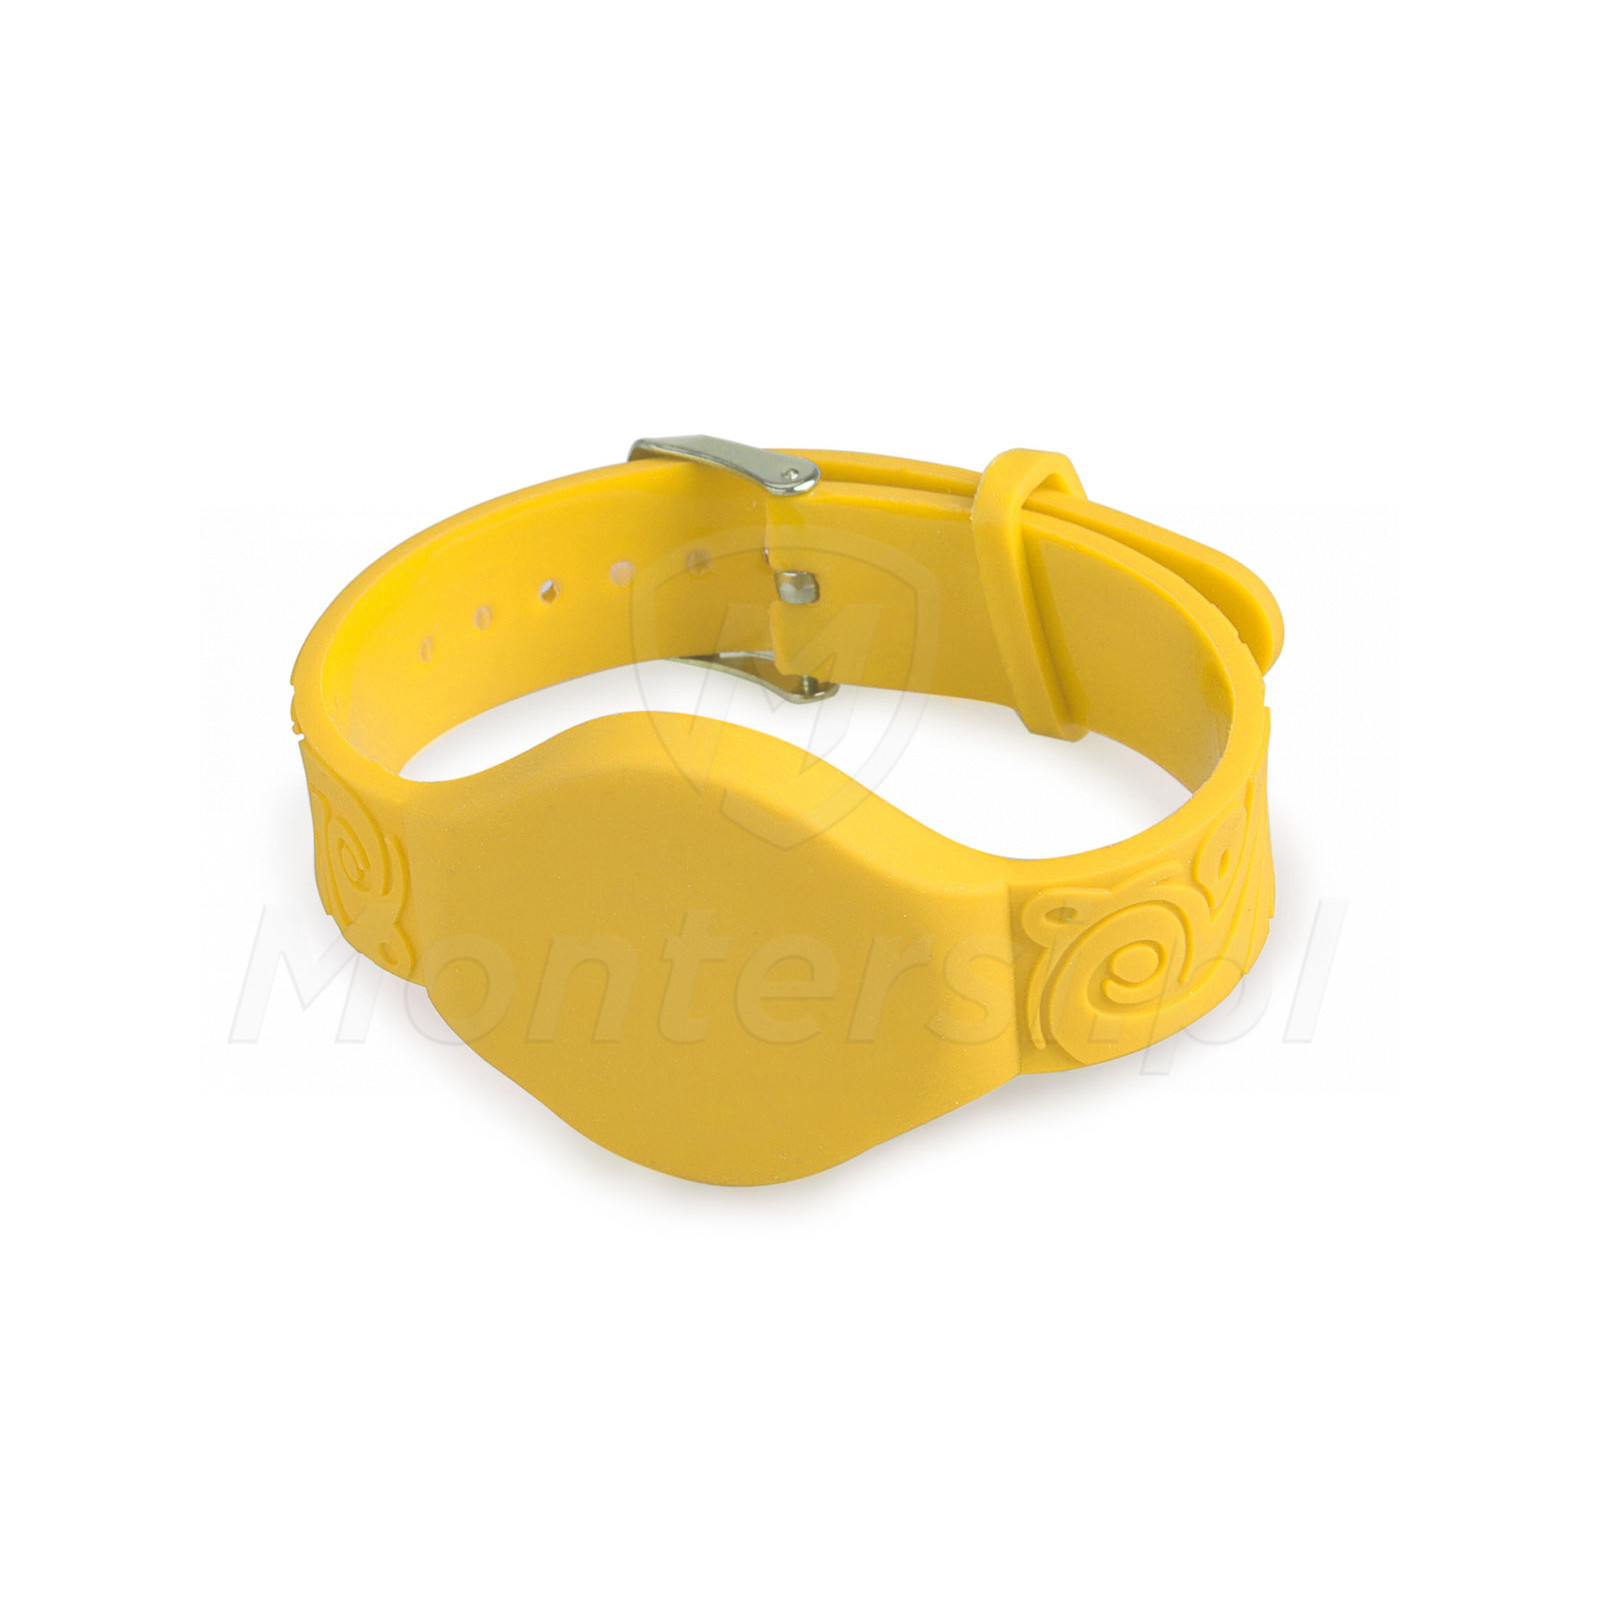 WH006 - Żółty zegarek basenowy